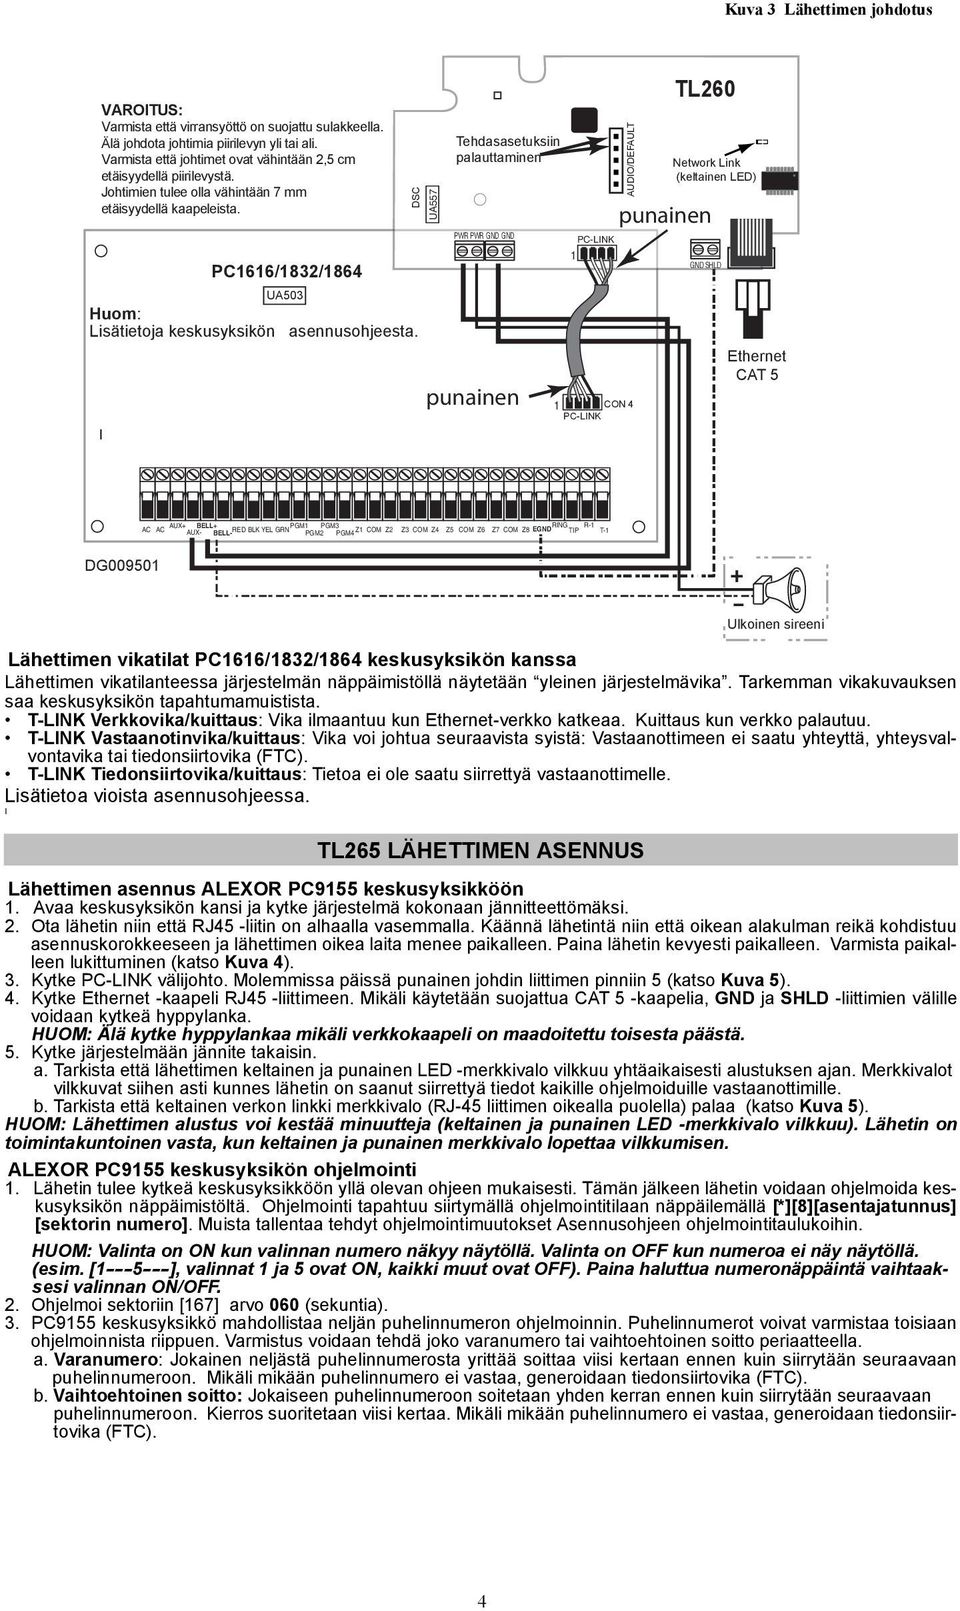 PC1616/1832/1864 DSC UA557 UA503 Huom: Lisätietoja keskusyksikön asennusohjeesta.